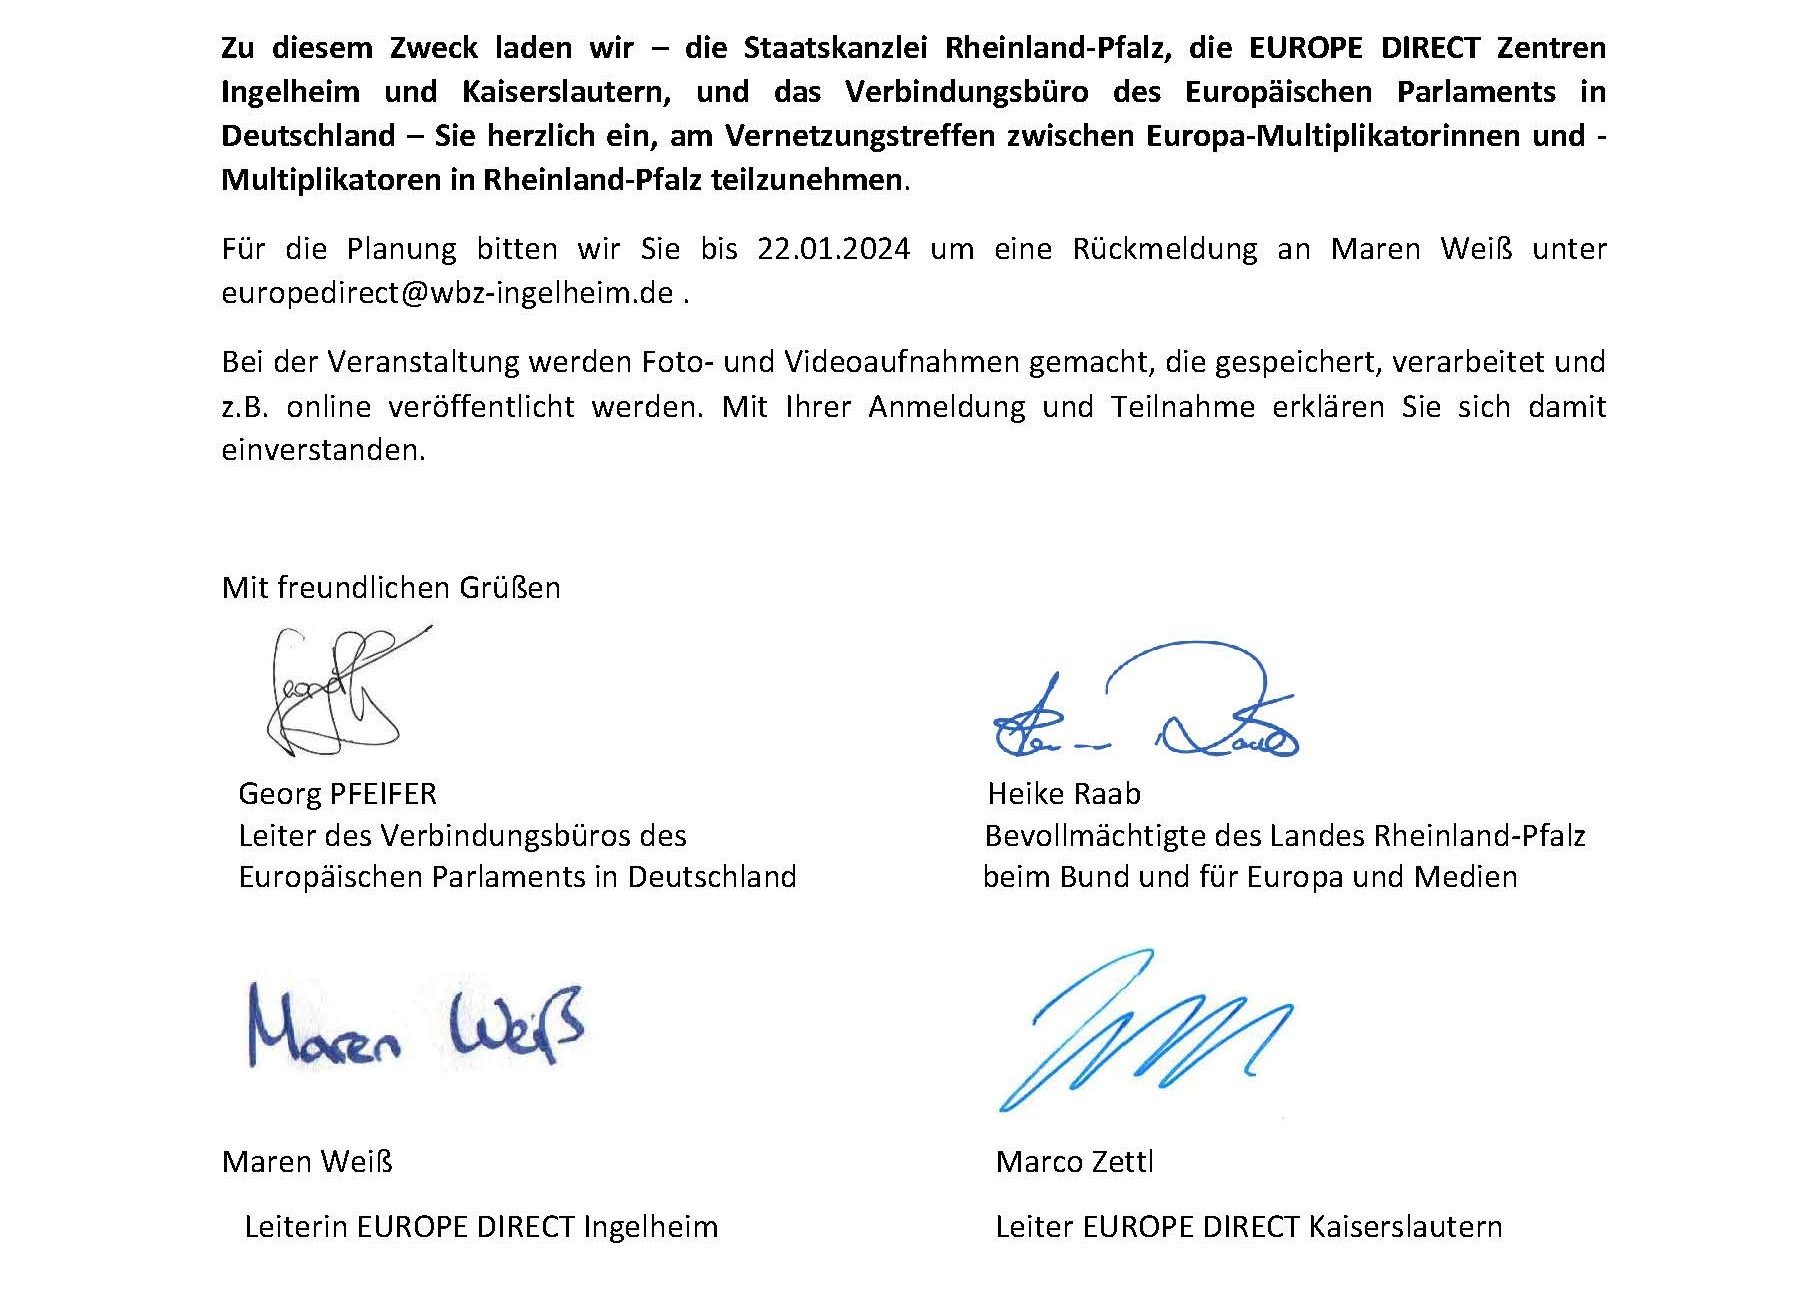 signatures - Vernetzungstreffen zwischen Europa-Multiplikator*innen in Rheinland-Pfalz zur Europawahl 2024 in Mainz